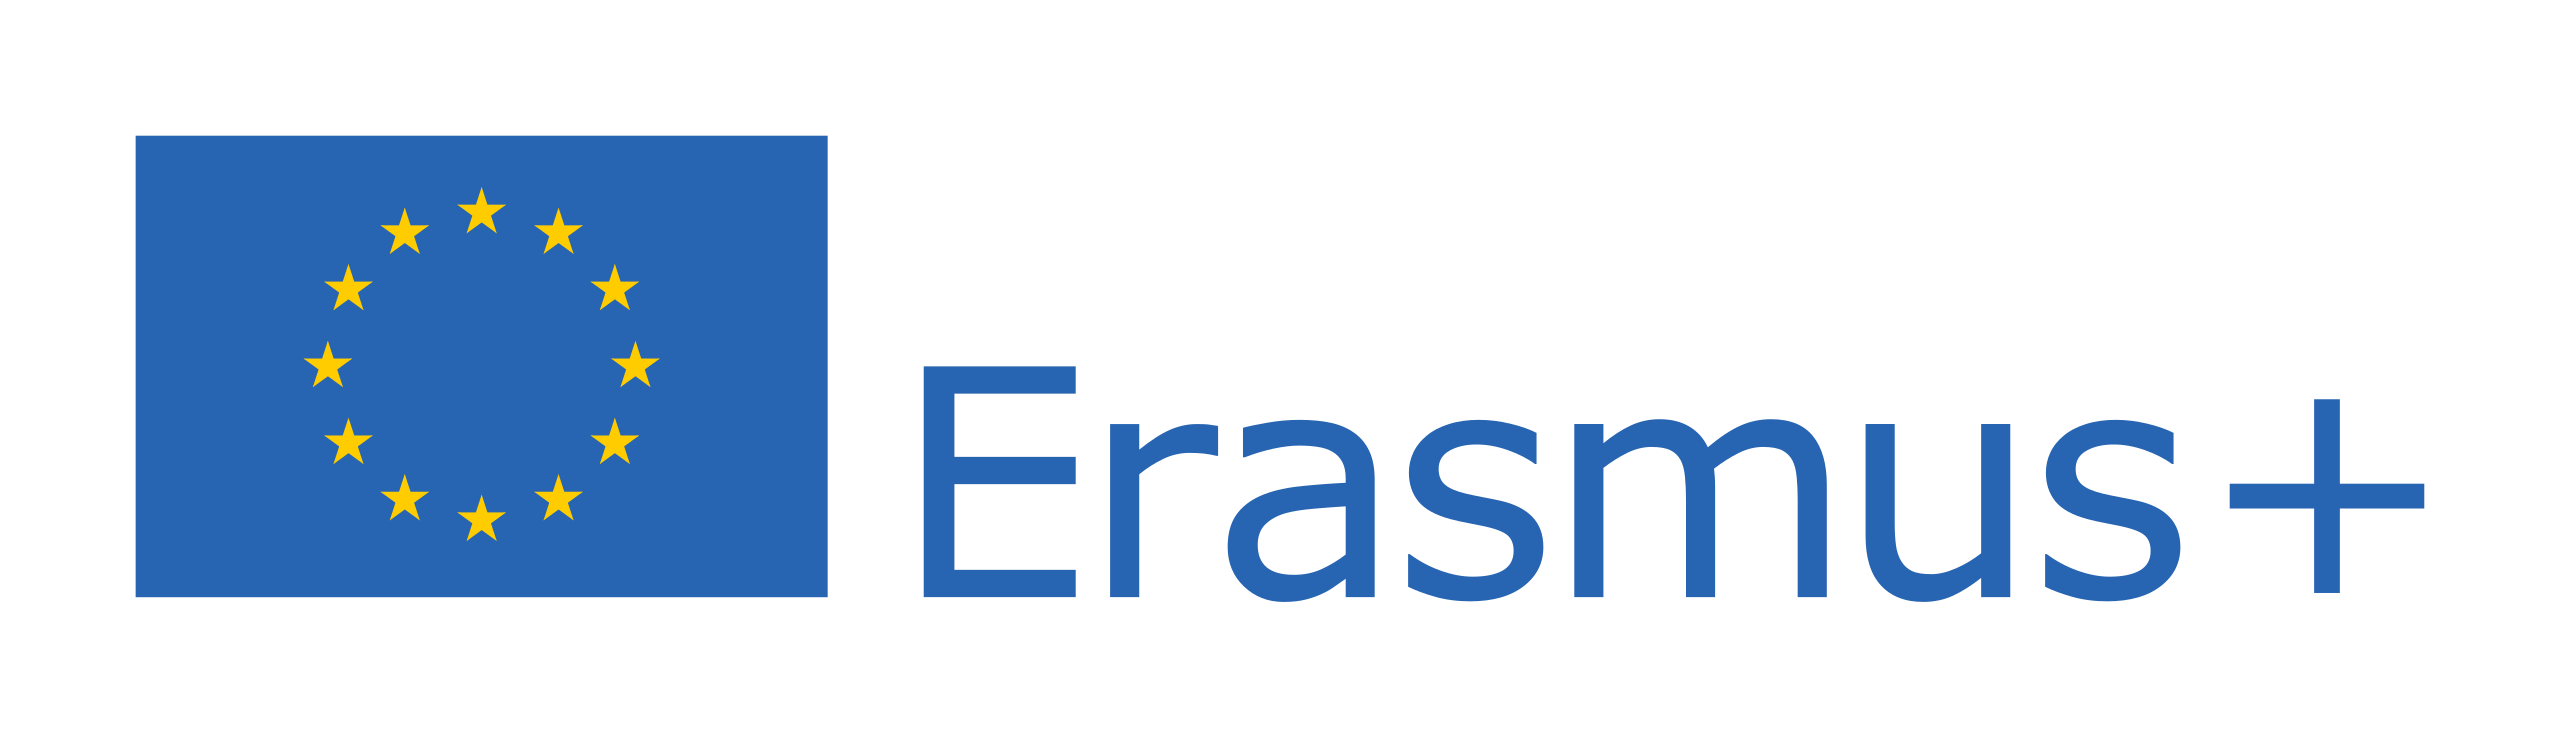 Erasmus+_Logo.svg.png